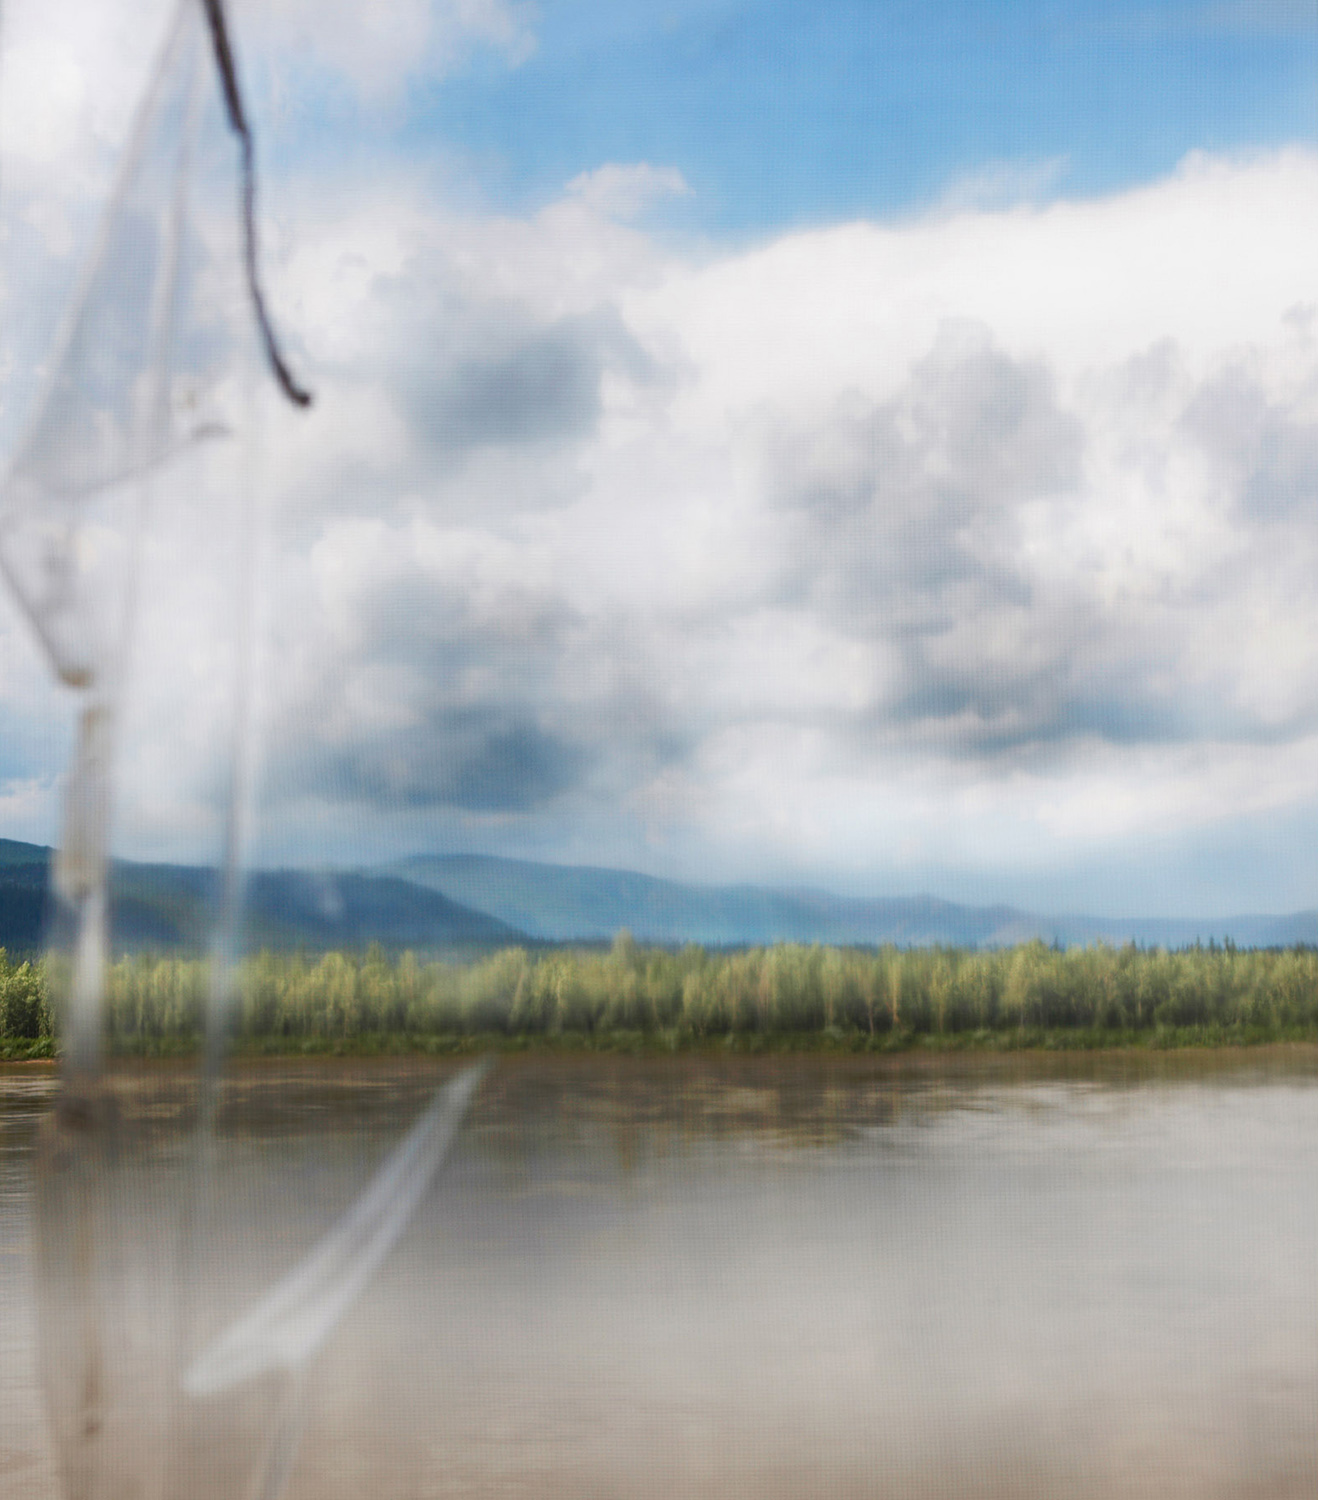 Ein Blick aus dem Fenster einer Fischerhütte mit Blick auf den Yukon River. Die Hütten werden während der Lachssaison genutzt, bleiben aber ansonsten leer. Der Yukon River fließt von seiner Quelle in Britisch-Kolumbien (Kanada) durch das Yukon Territory, bevor er die Grenze zu Alaska überquert und in etwa 3000 km Entfernung in das Beringmeer mündet. Der Fluss hat eine geschichtsträchtige Goldrausch-Geschichte und ist eine der schönsten Wasserstraßen der Welt. Er ist ein fantastischer Spielplatz für SUPs, Kajakfahrer, Kanufahrer, Jäger und Fischer.